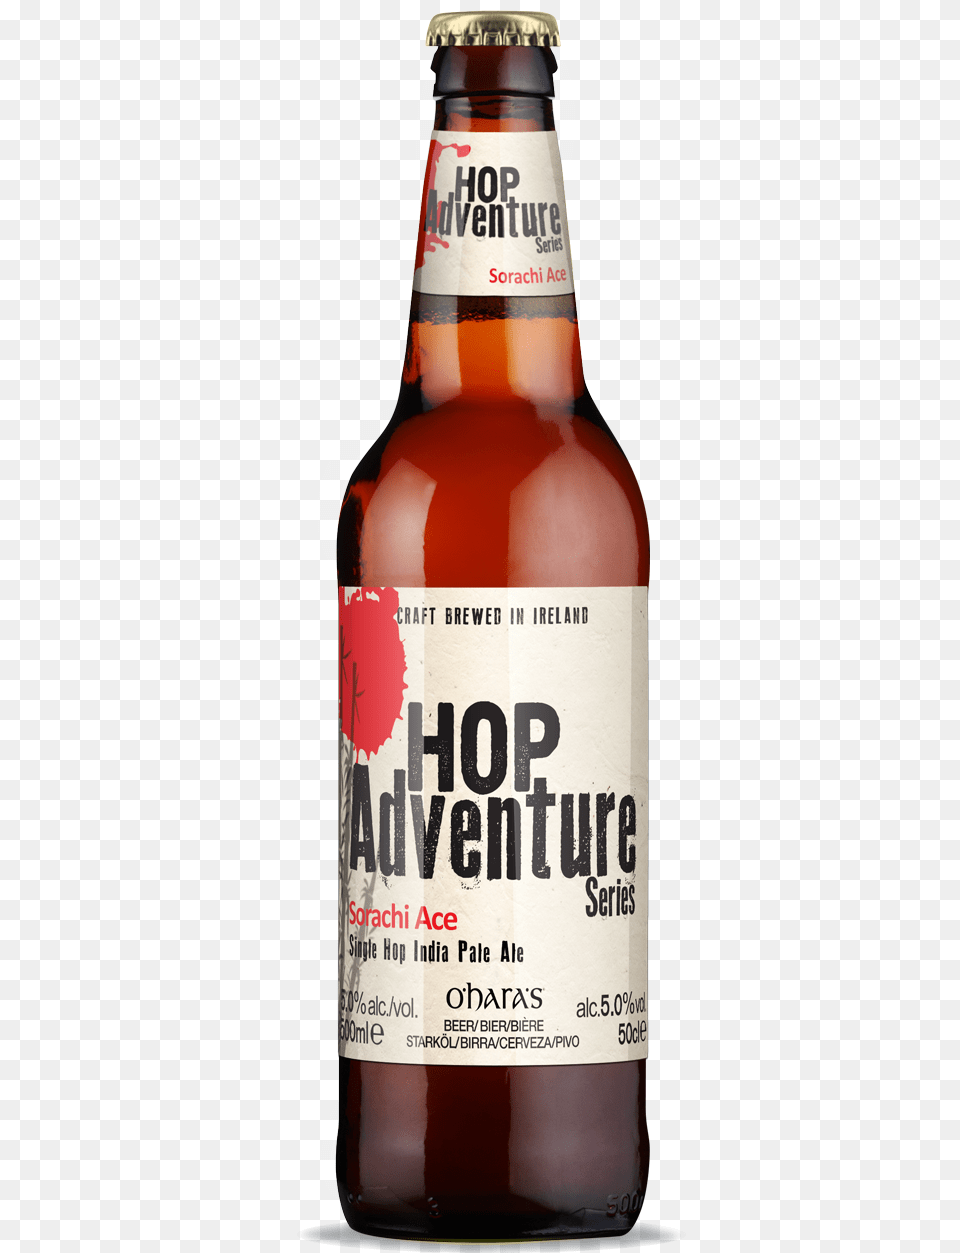 Hop Adventure Series Sorachi Ace O Hara Pale Ale, Alcohol, Beer, Beer Bottle, Beverage Free Transparent Png